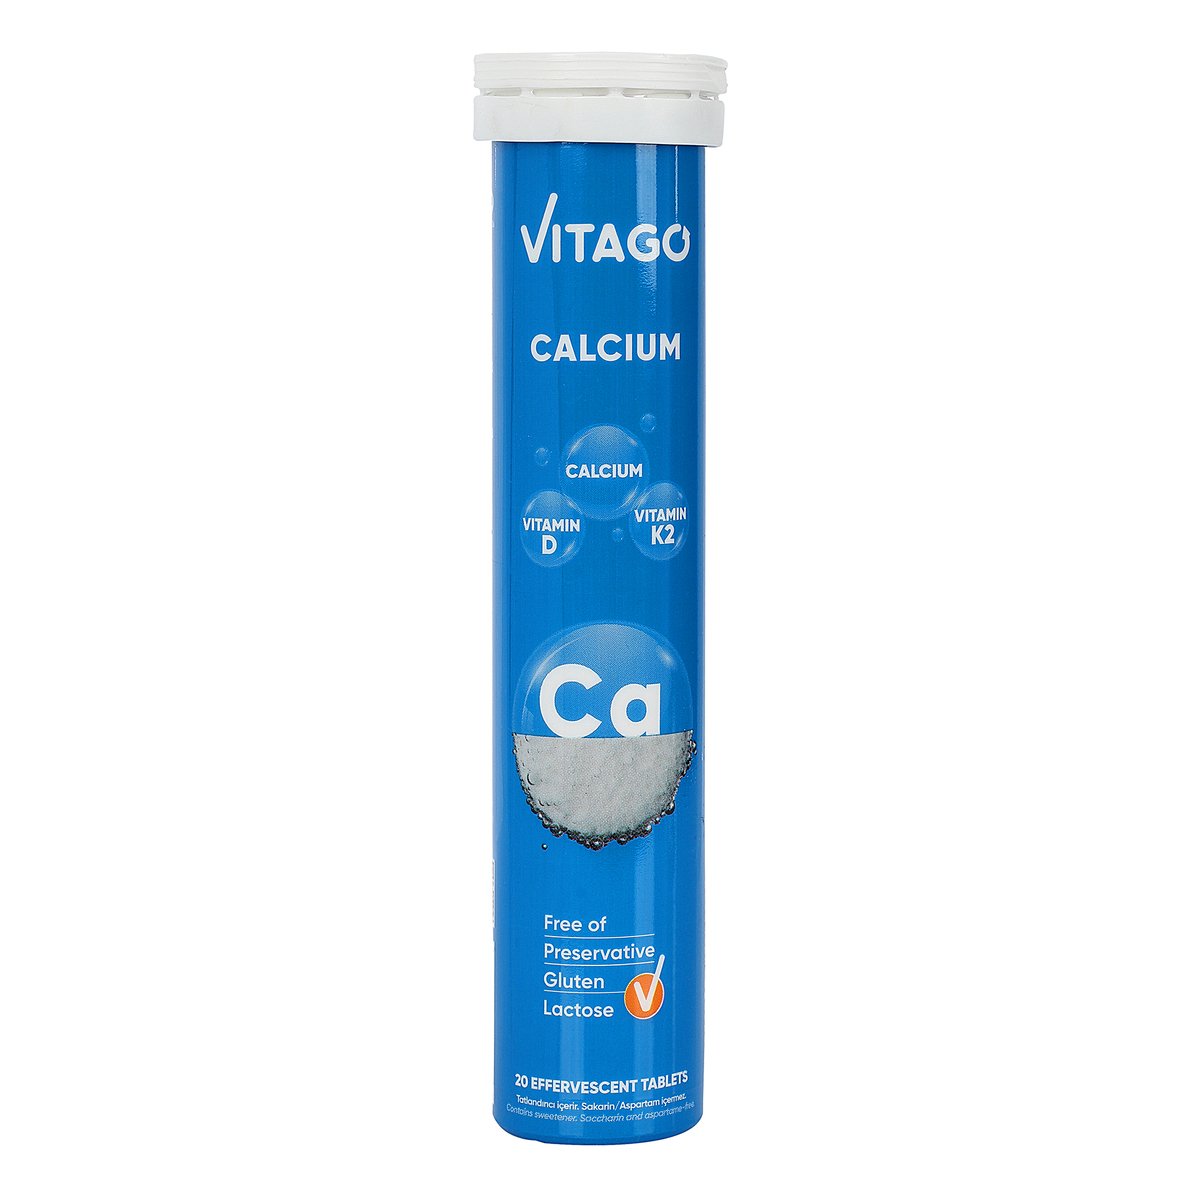 Vitago Calcium, Vitamin D & K2 20 pcs